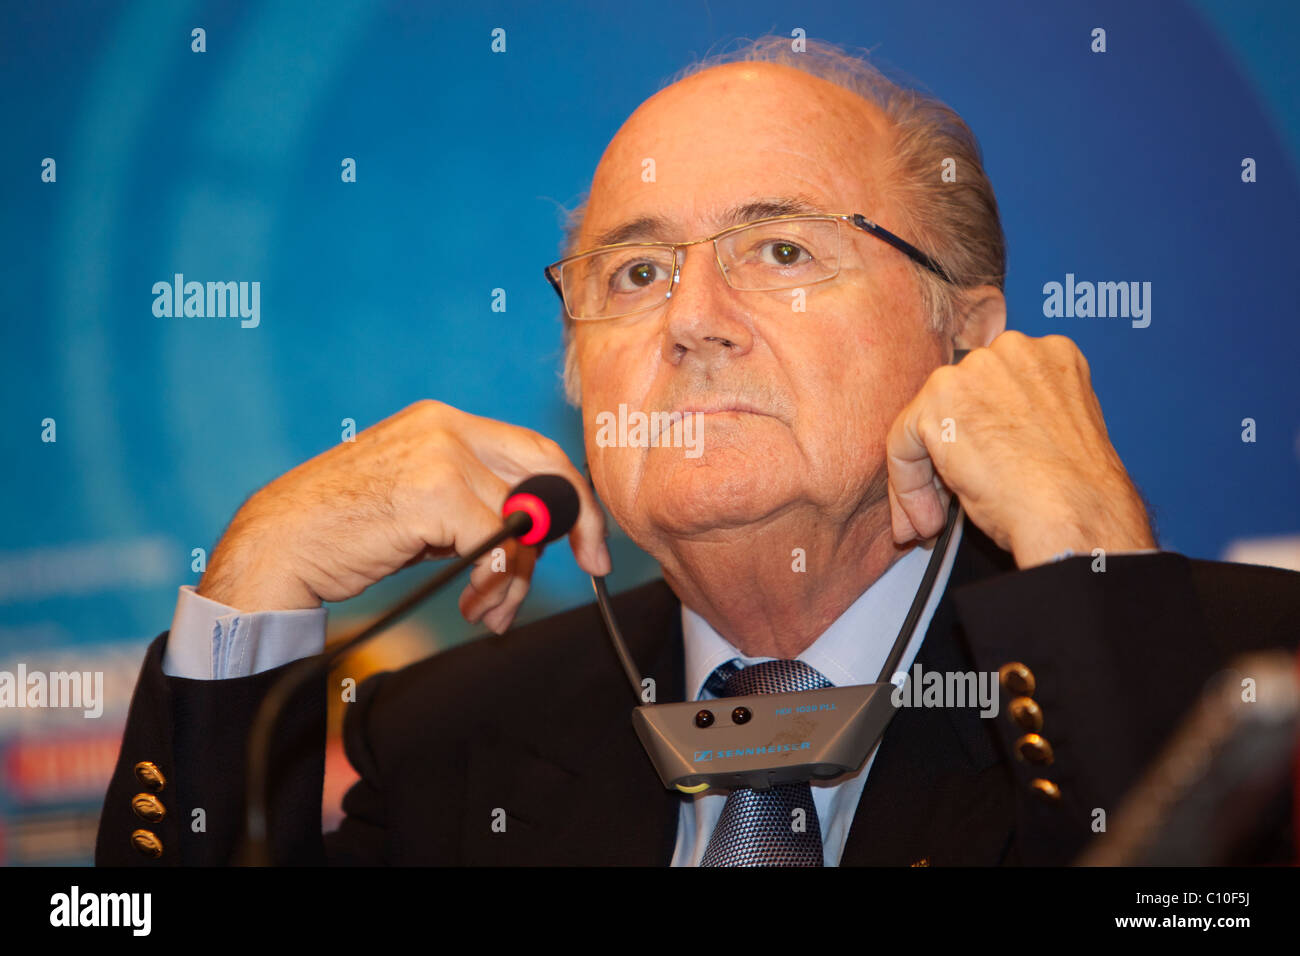 Le Président de la FIFA, Sepp Blatter, écoute une question lors d'une conférence de presse avant la Coupe du Monde U-20 2009 Championnat de soccer. Banque D'Images